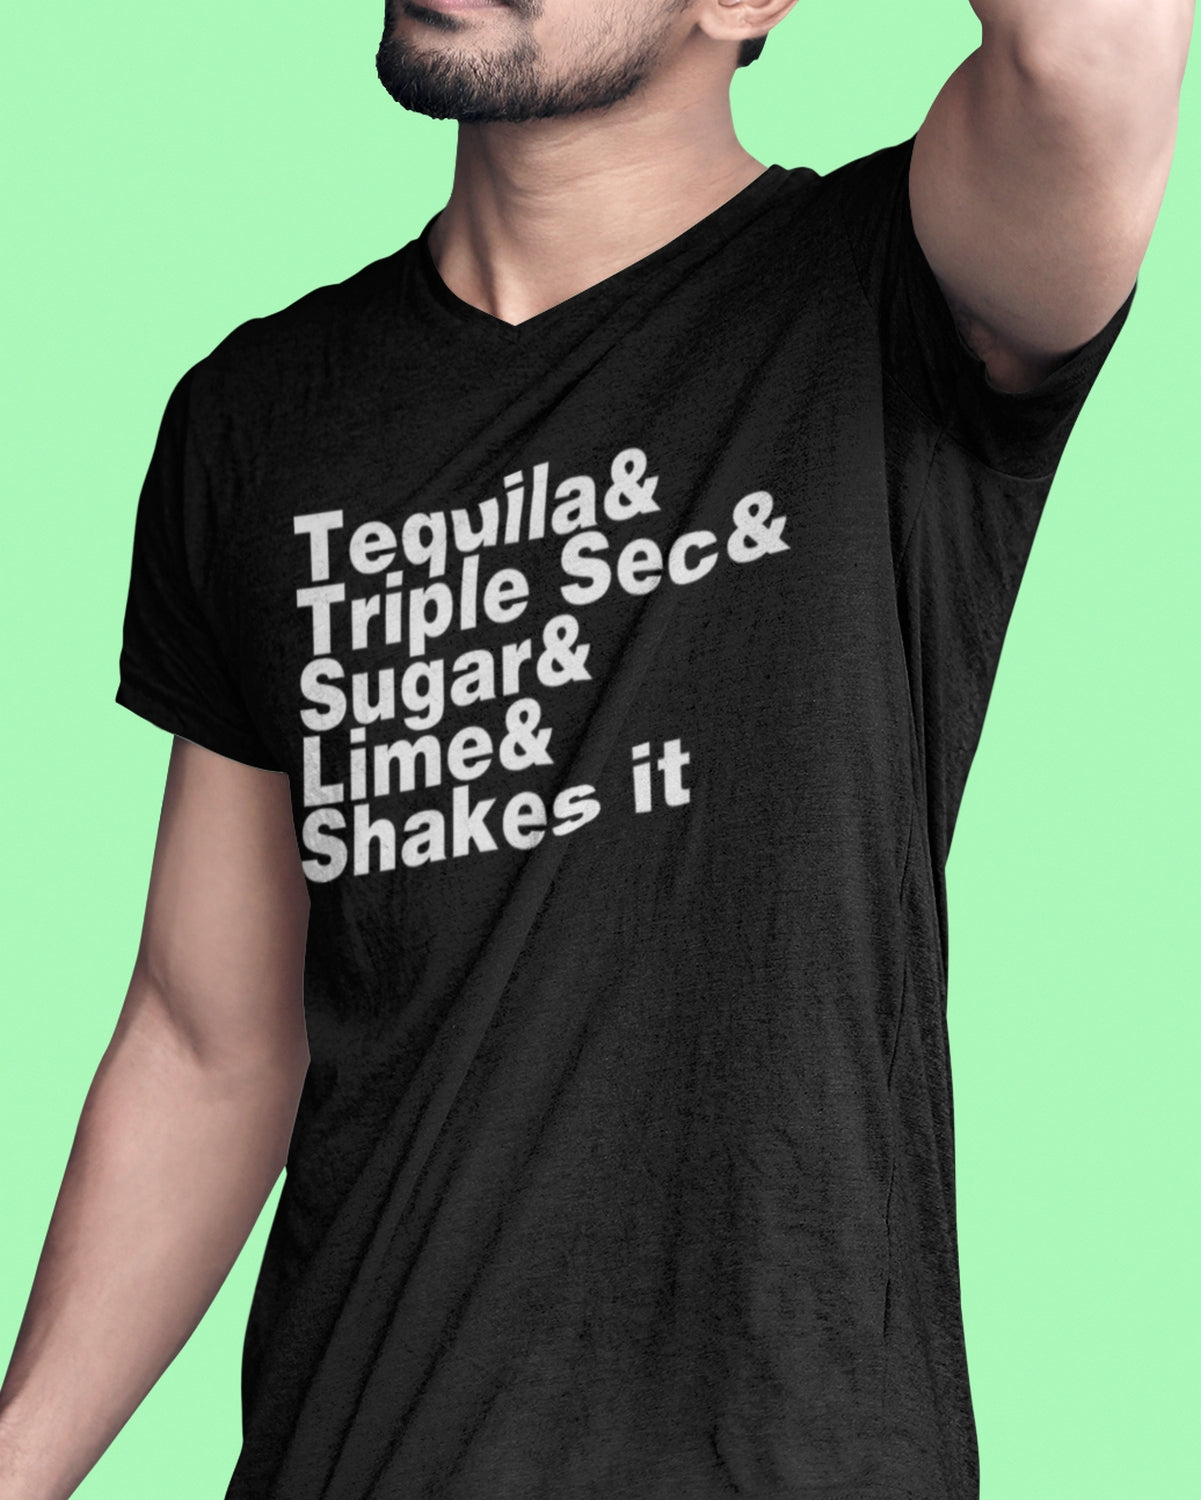 Camiseta unisex Tequila &amp; Triple Sec &amp; Lime &amp; Sugar &amp; Shakes It 